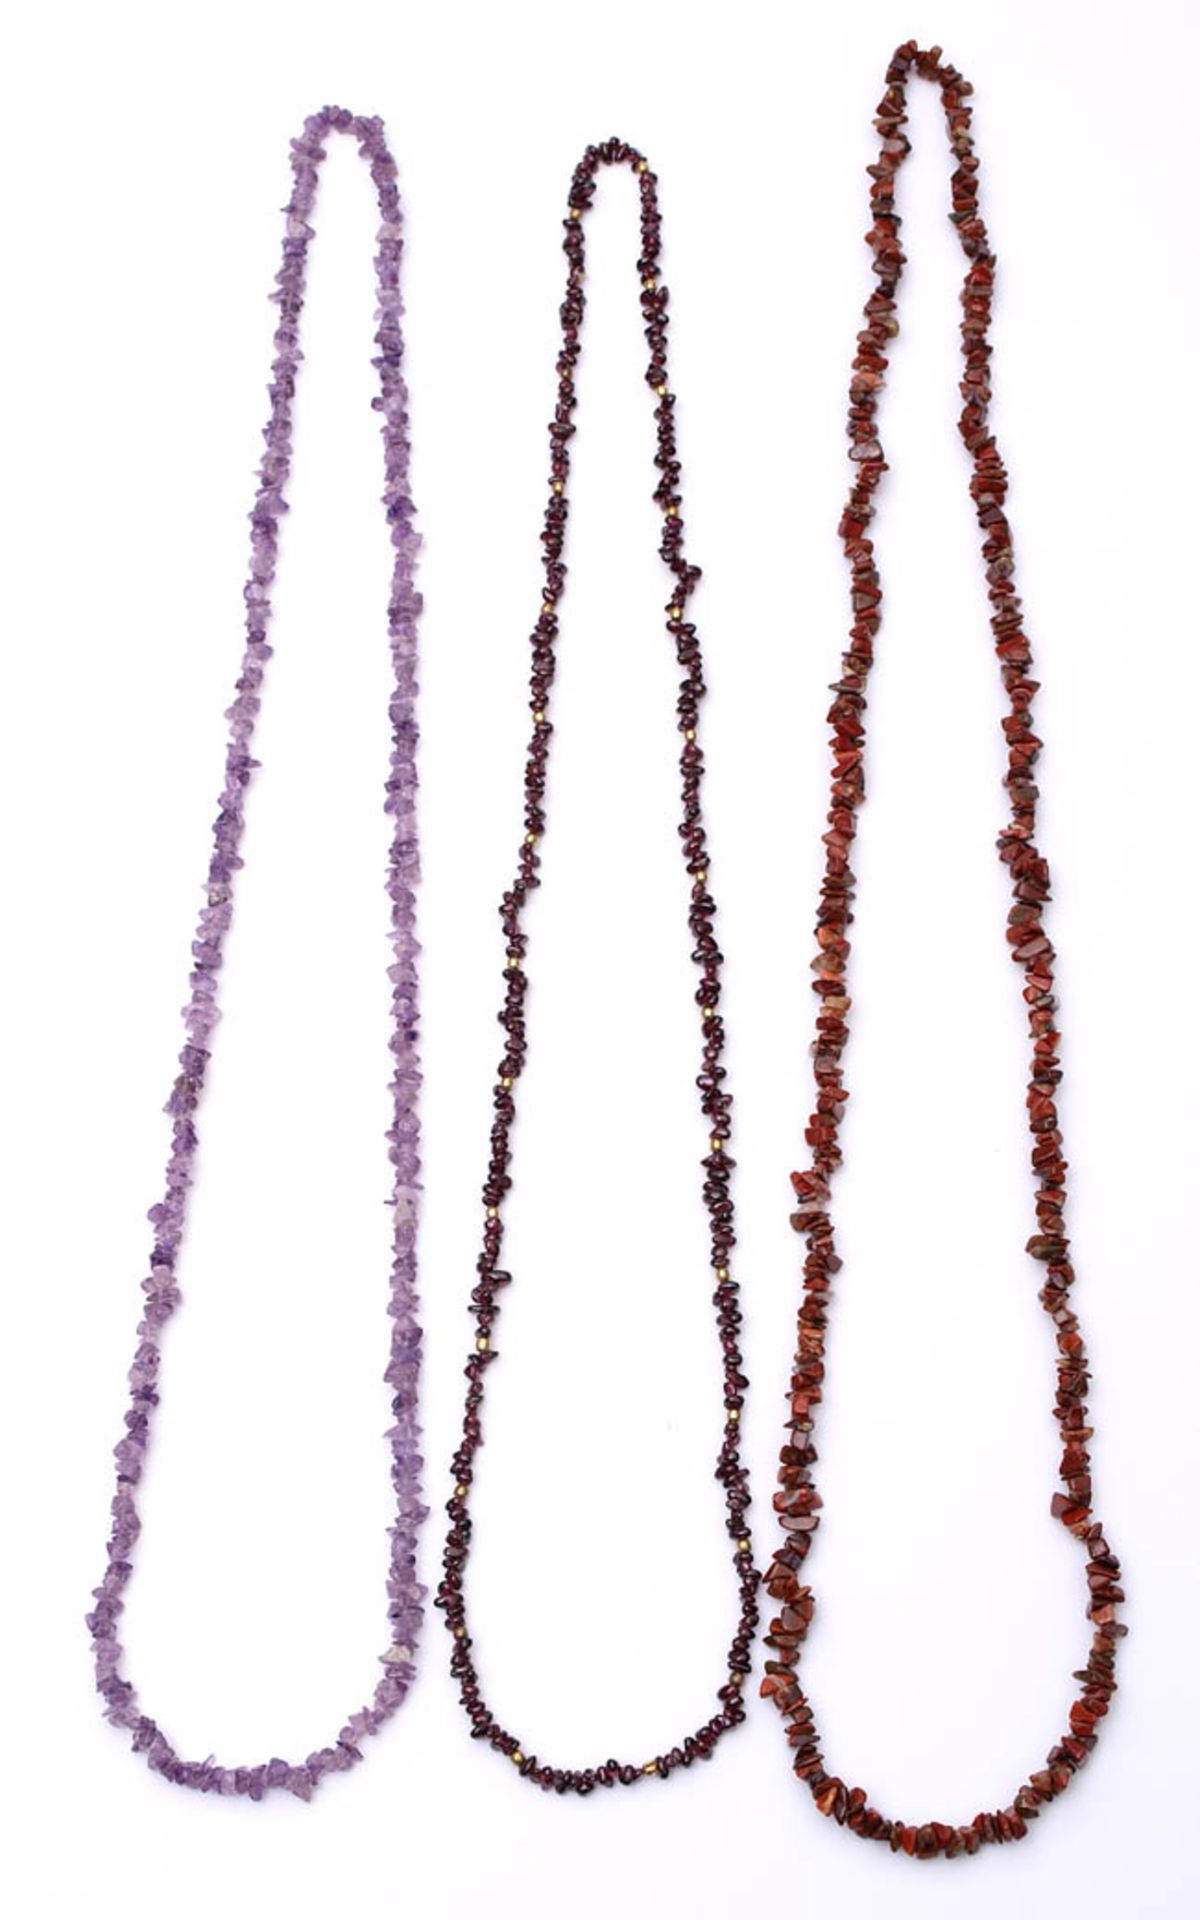 Drei div. Halbedelsteinketten Getrommelte Amethyste, Karneole bzw. Granaten. Unterschiedliche